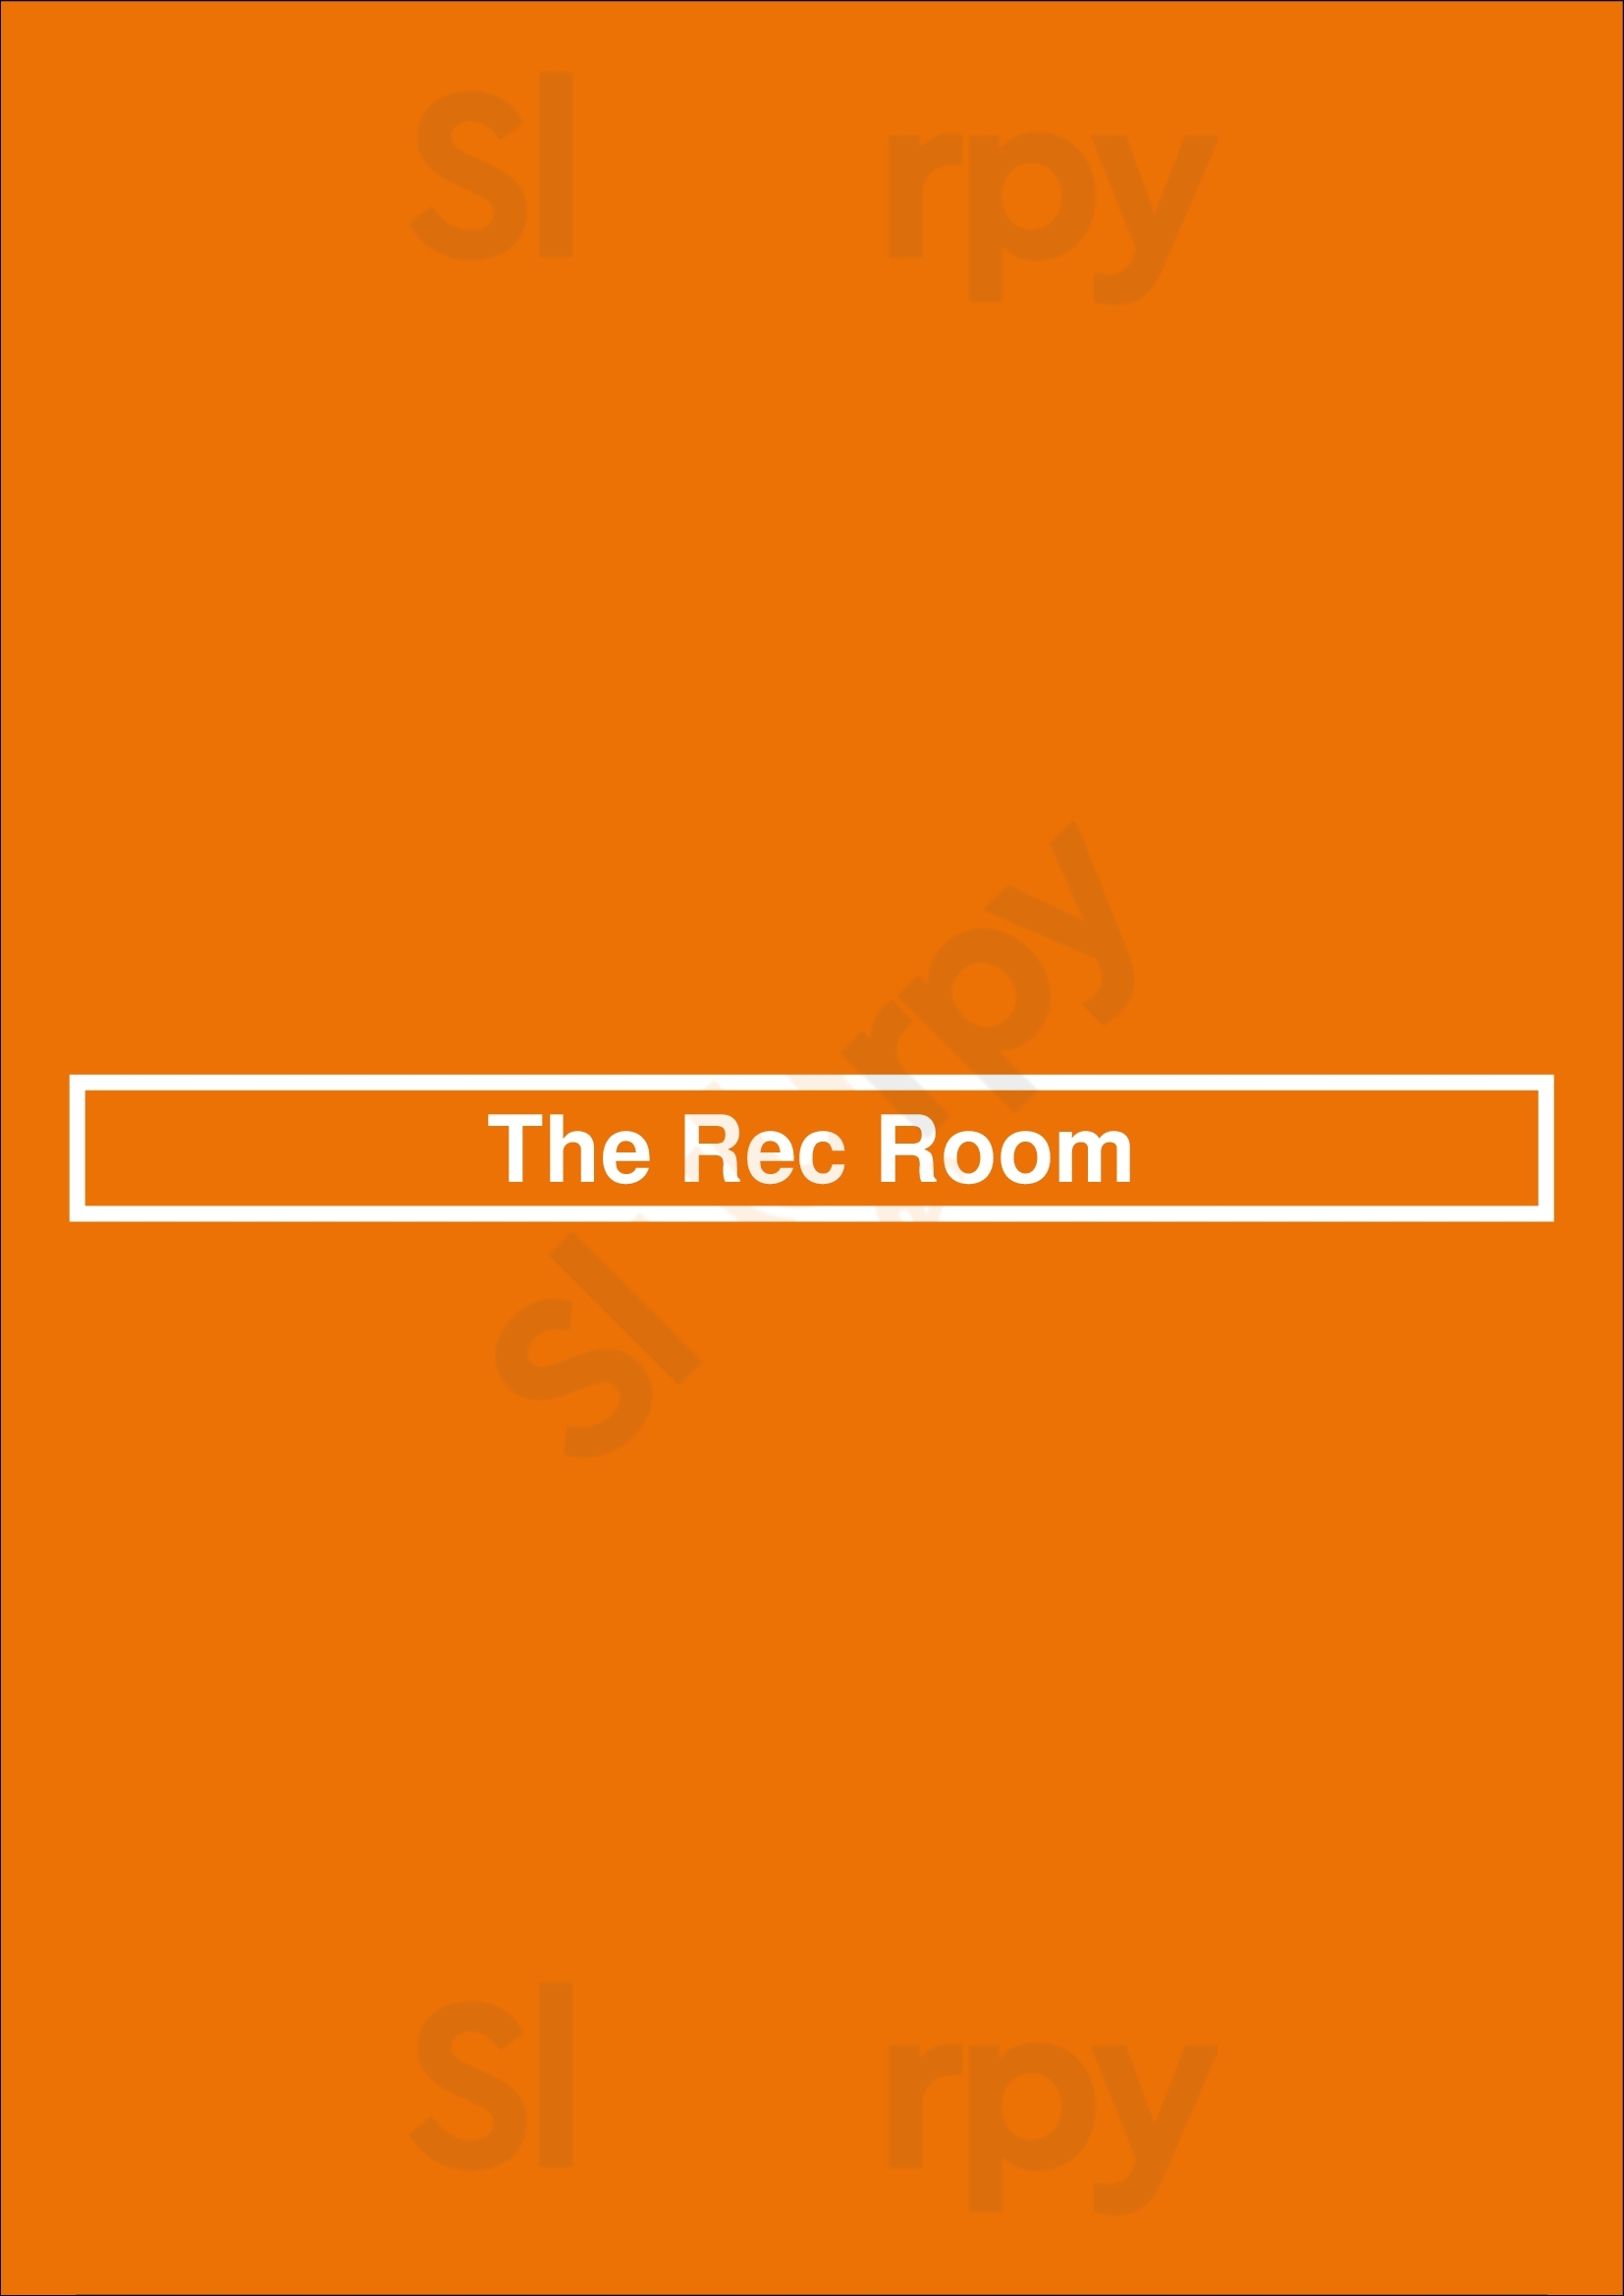 The Rec Room London Menu - 1